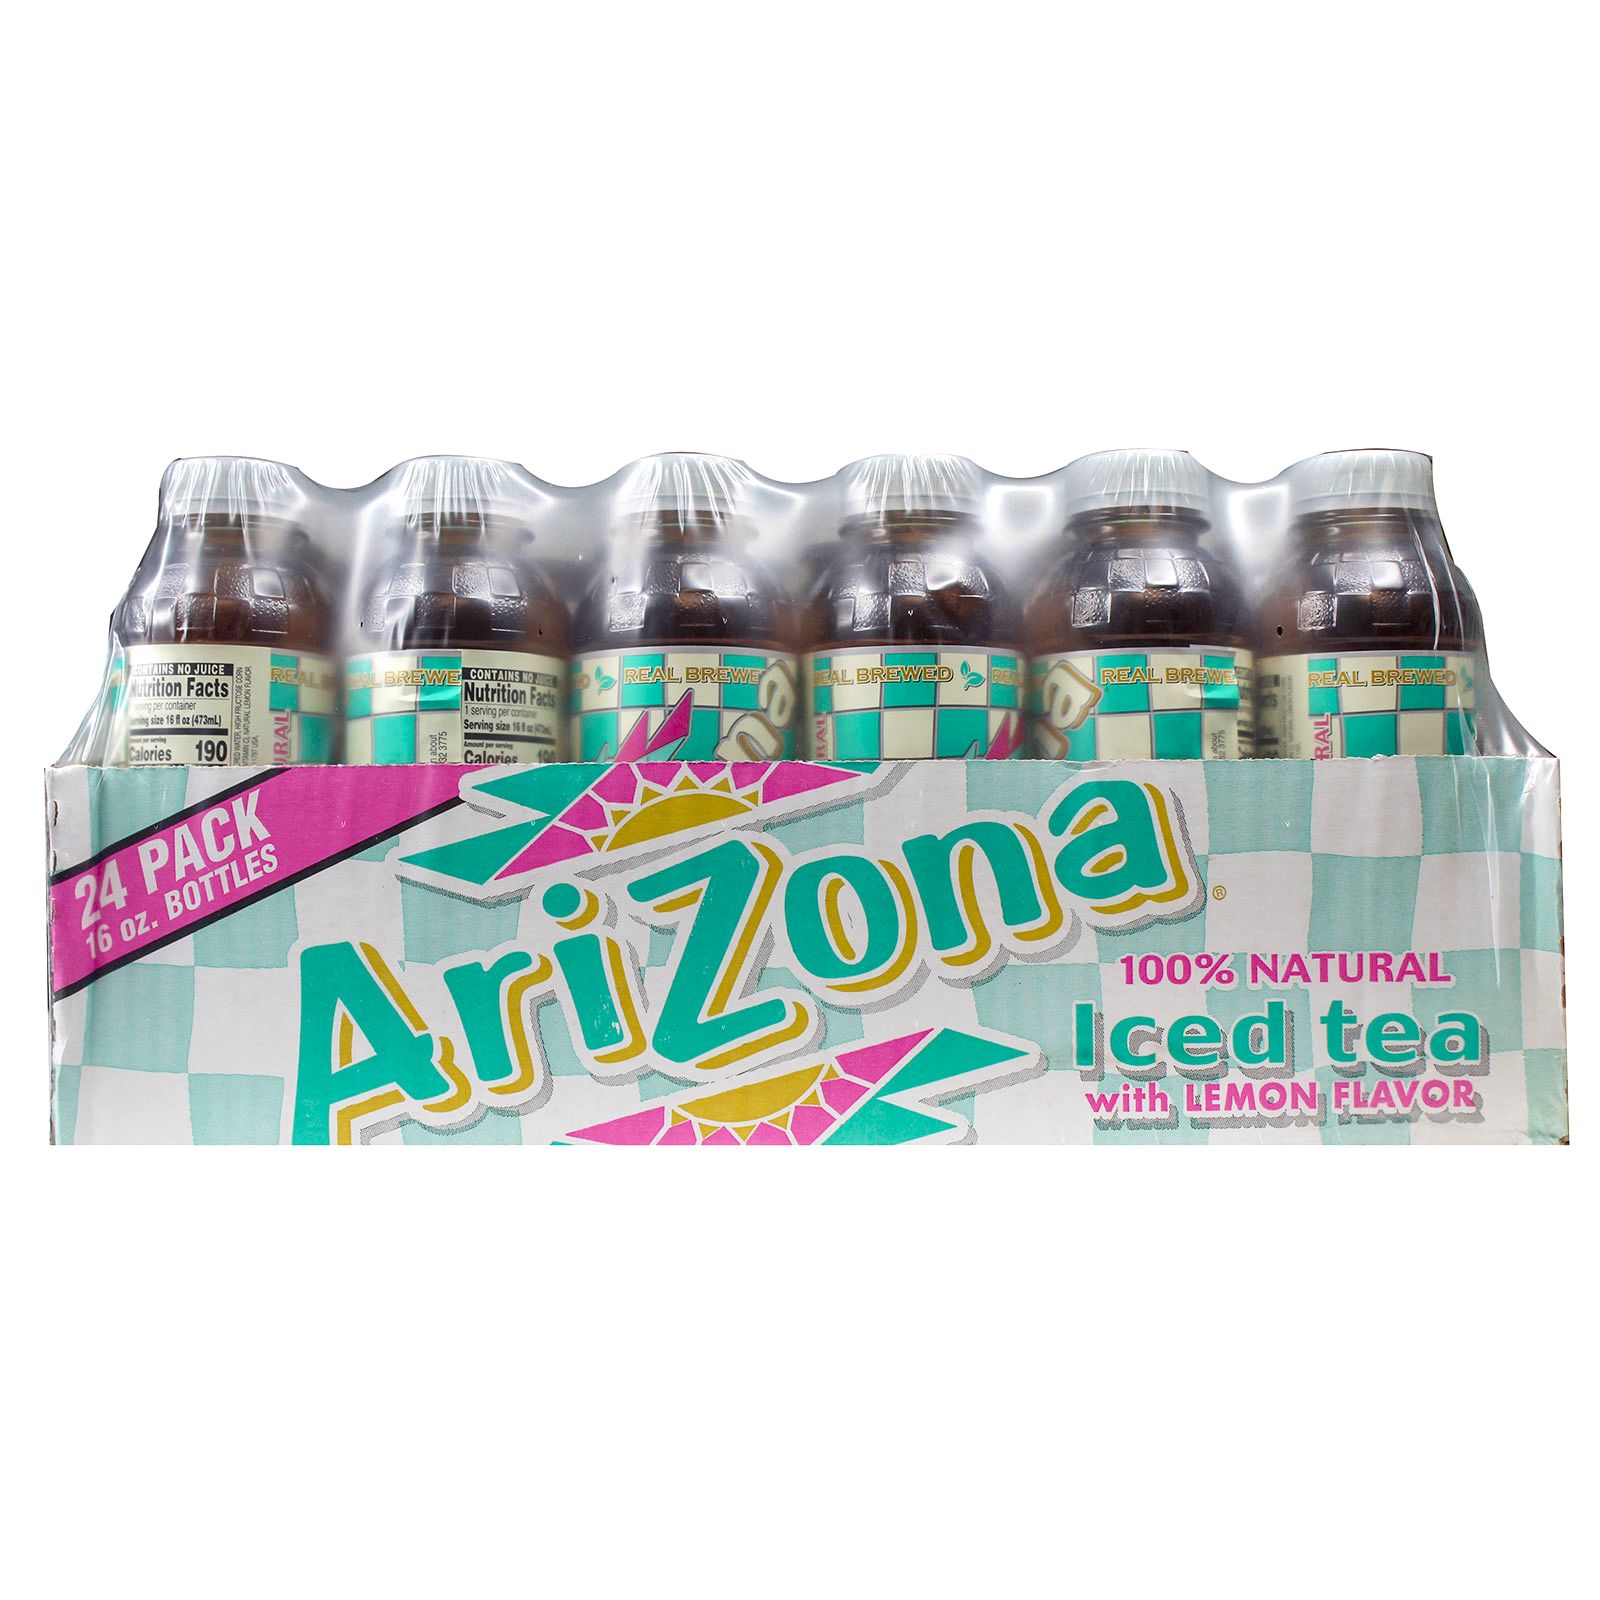 Arizona Iced Tea Lemon Juice Can (23 Fl Oz. / 24 Pack)